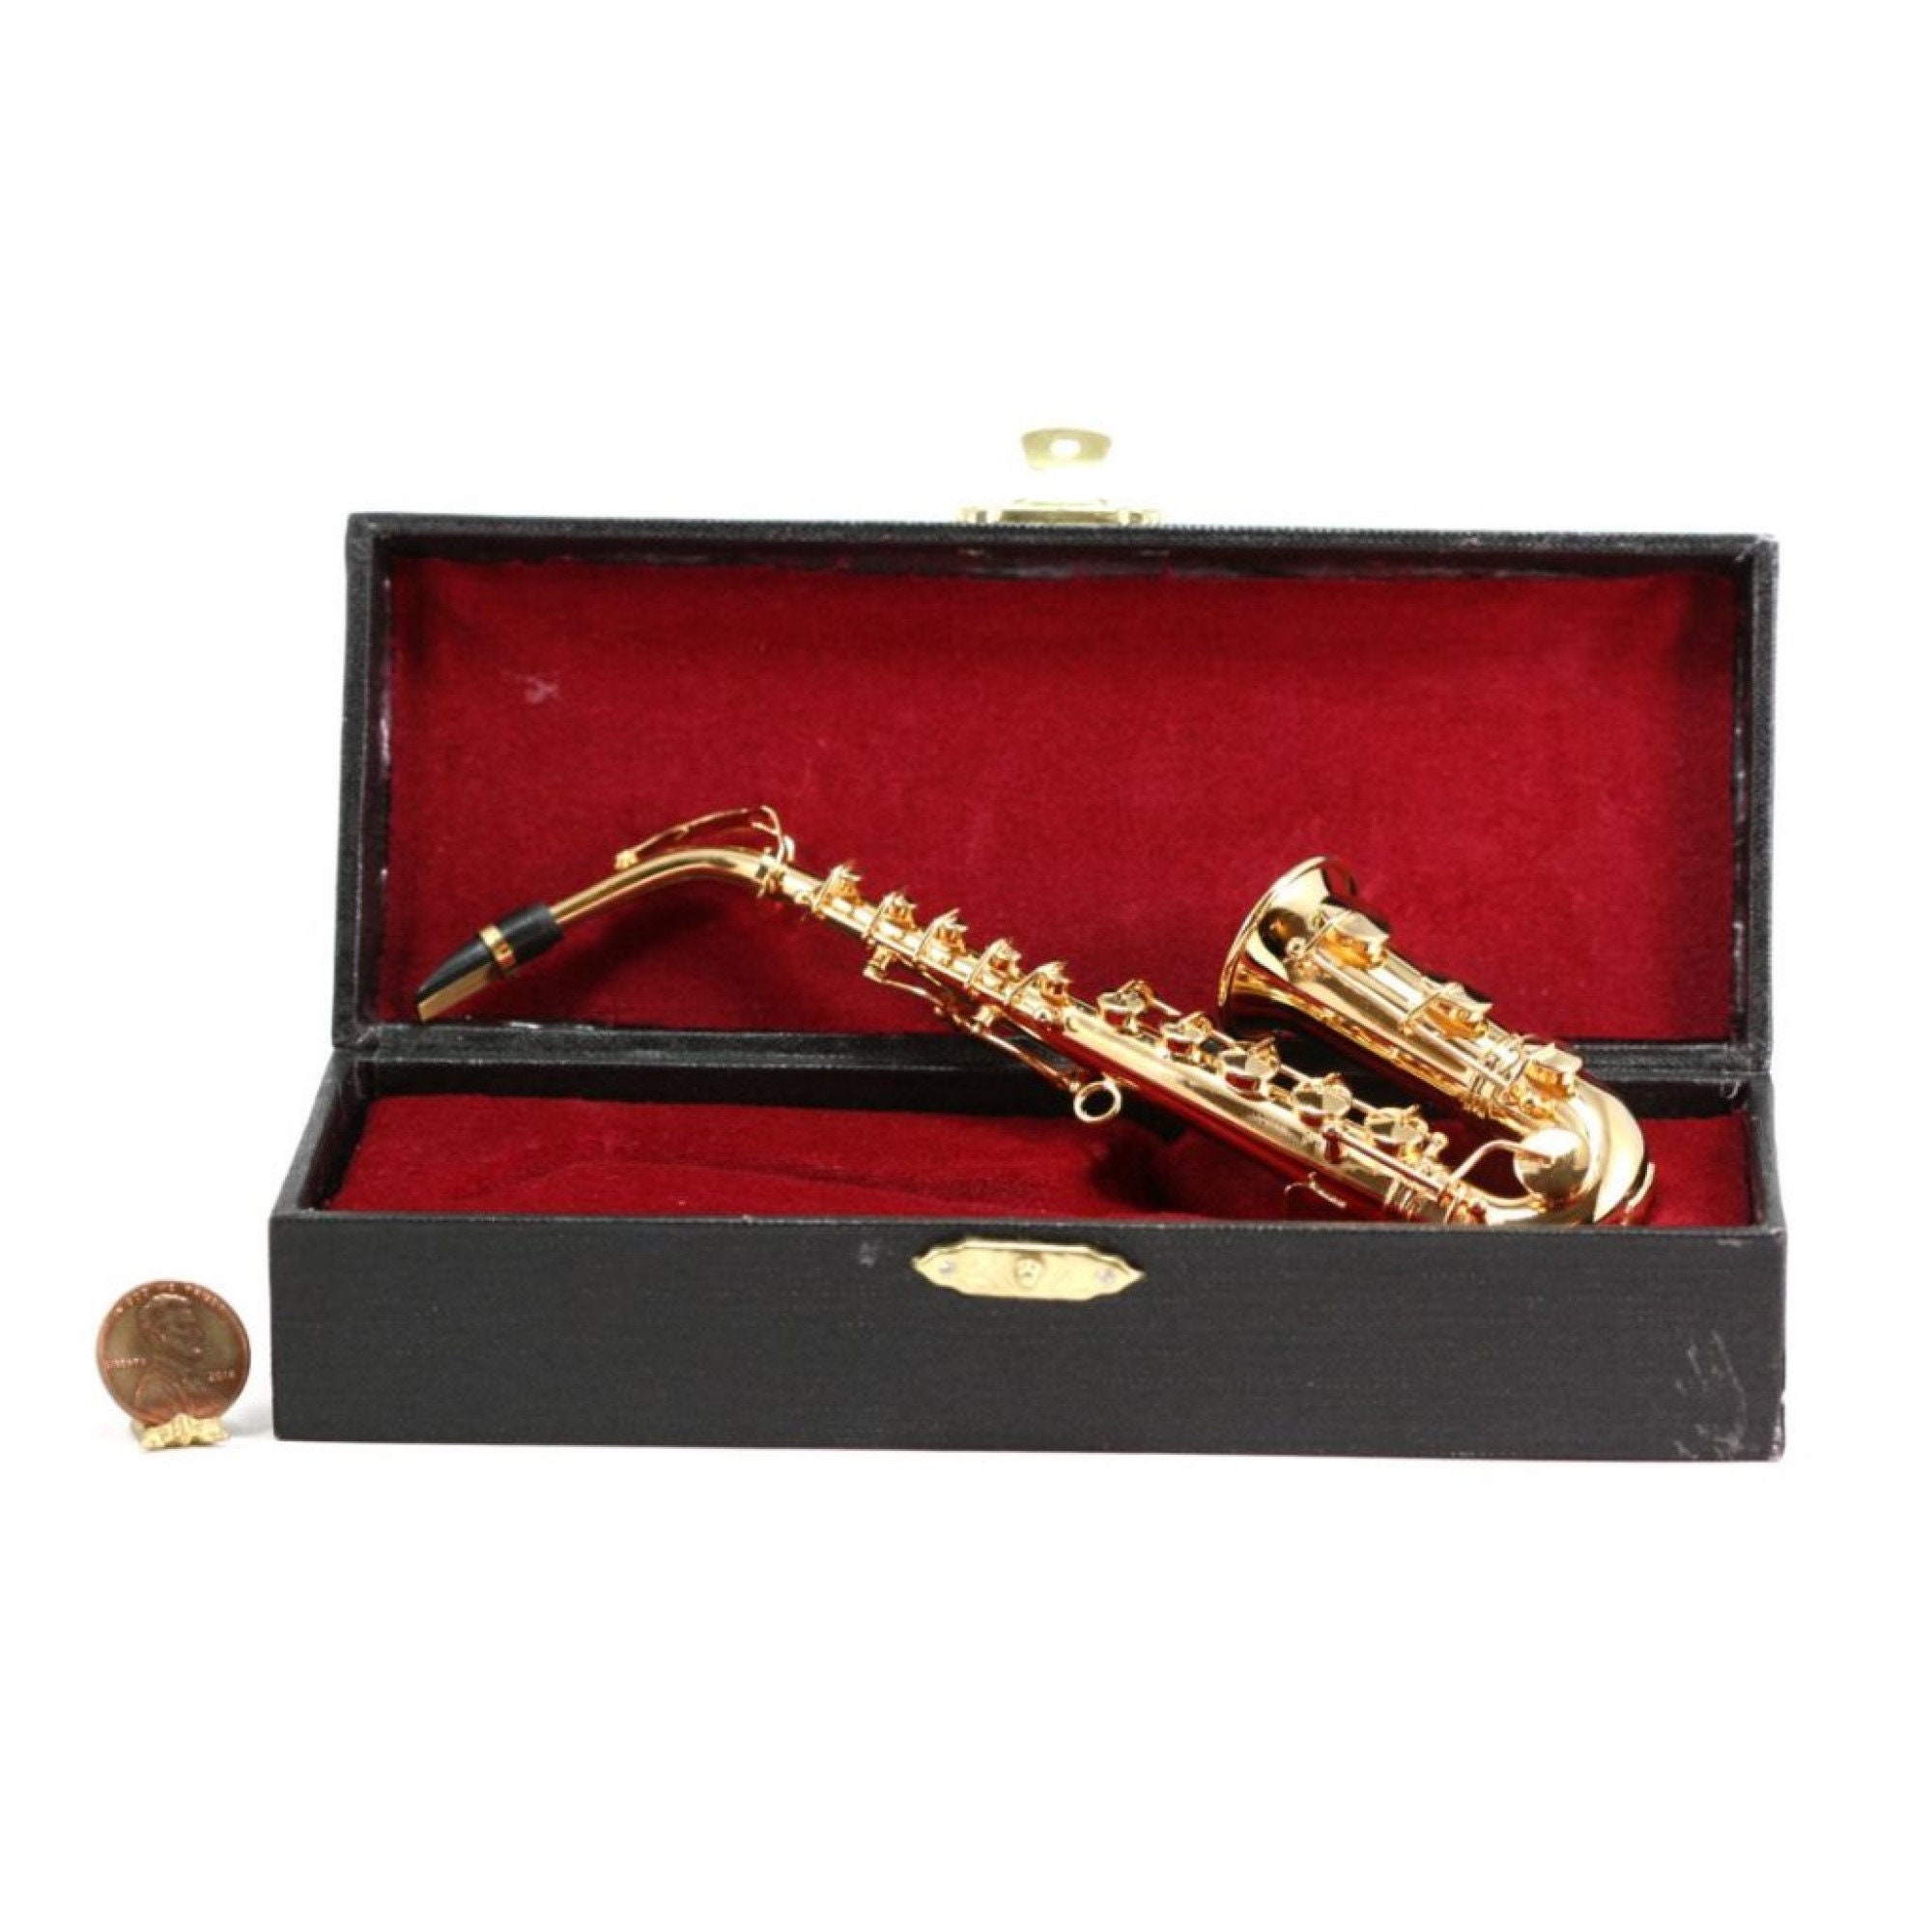 Miniature Saxophone - Etsy